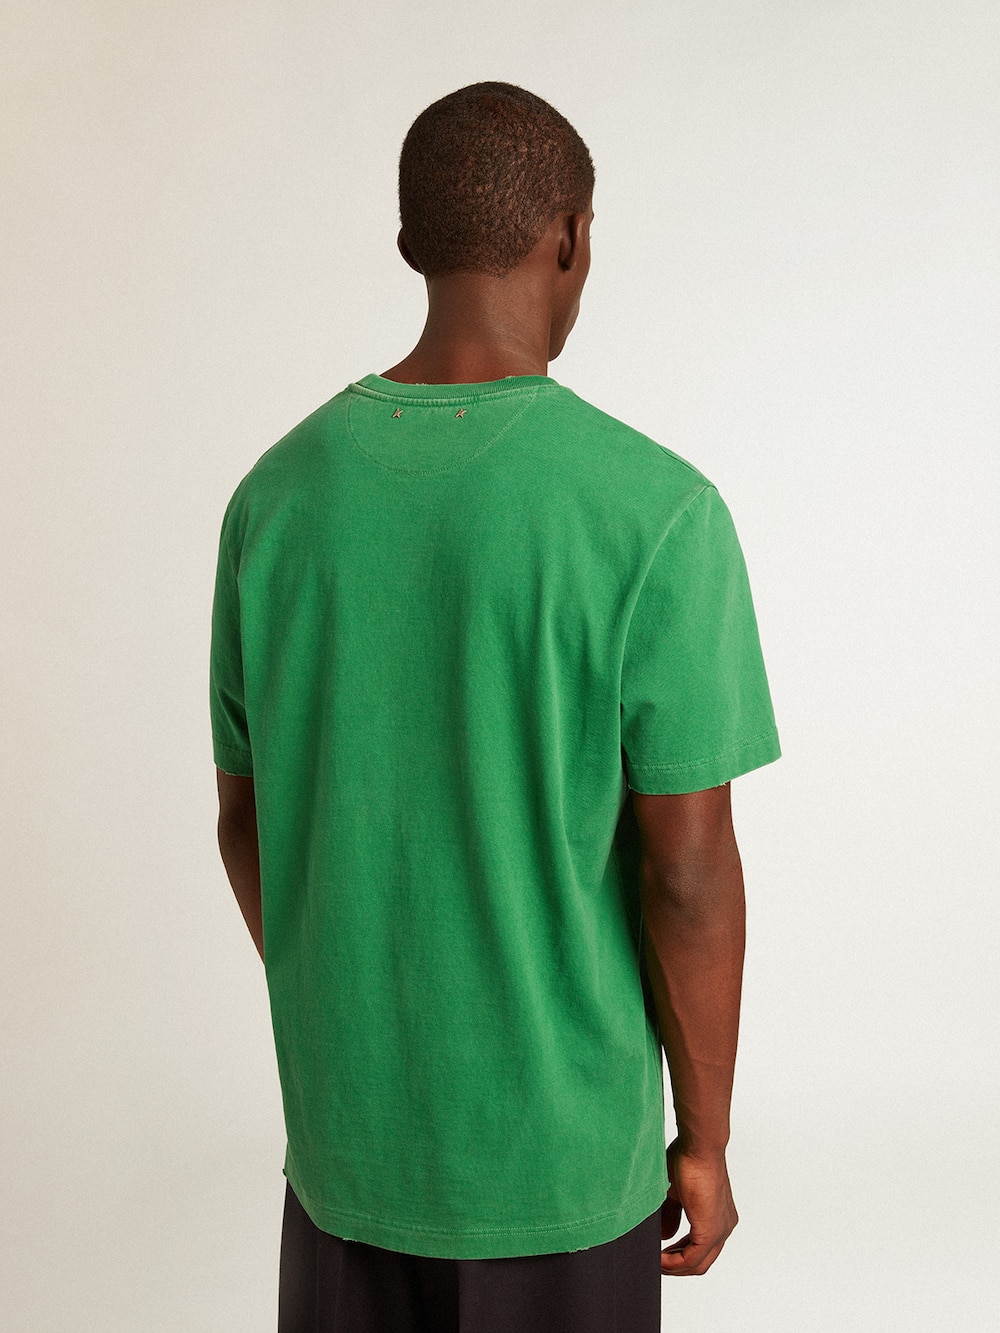 Golden Goose - T-shirt homme en coton vert avec inscription au centre in 